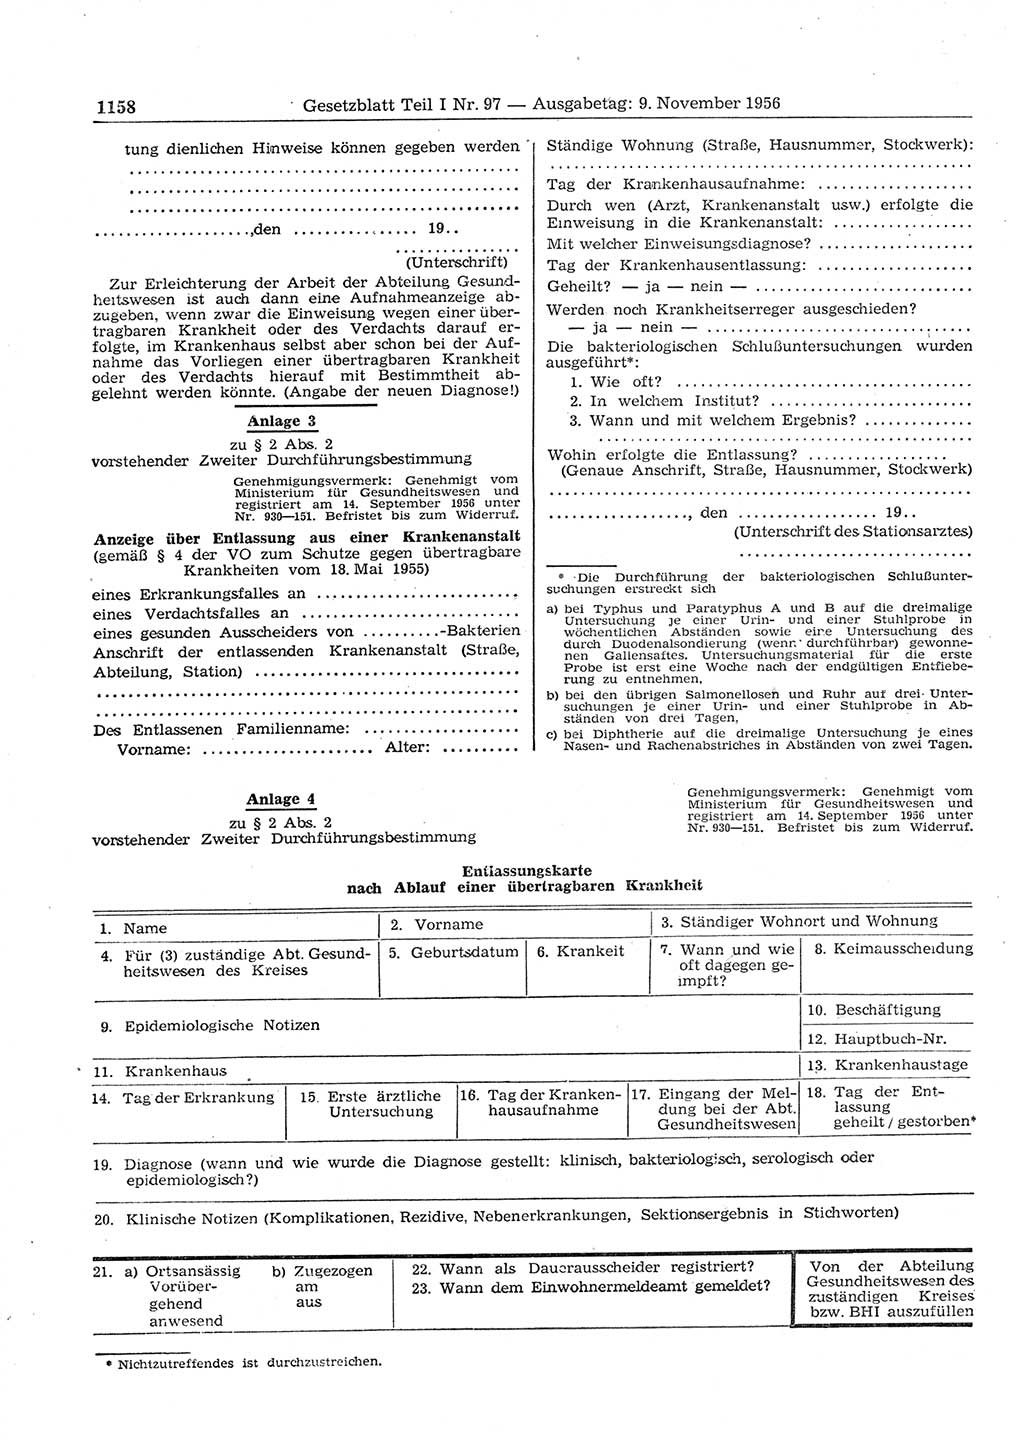 Gesetzblatt (GBl.) der Deutschen Demokratischen Republik (DDR) Teil Ⅰ 1956, Seite 1158 (GBl. DDR Ⅰ 1956, S. 1158)